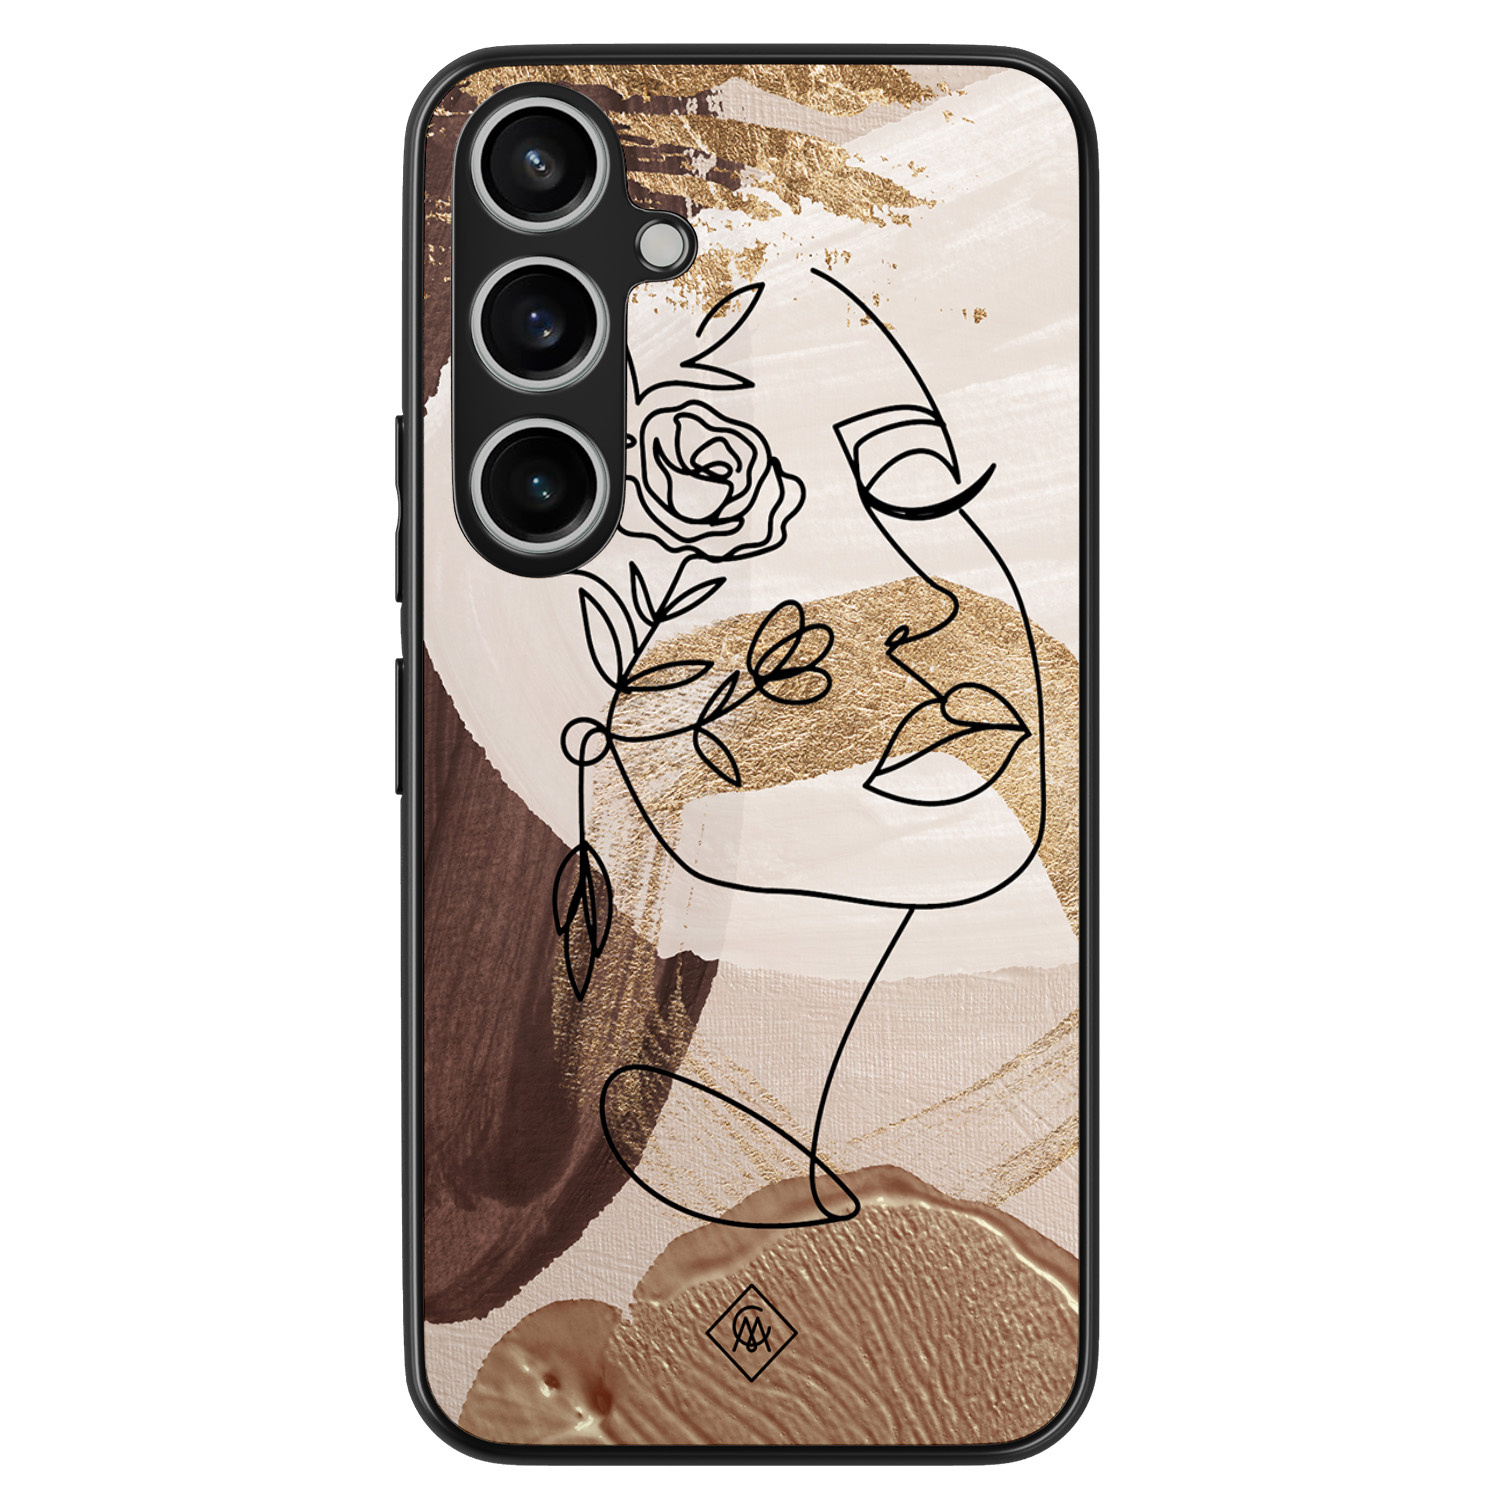 Samsung Galaxy A55 hoesje - Abstract gezicht bruin - Bruin/beige - Hard Case TPU Zwart - Geometrisch patroon - Casimoda